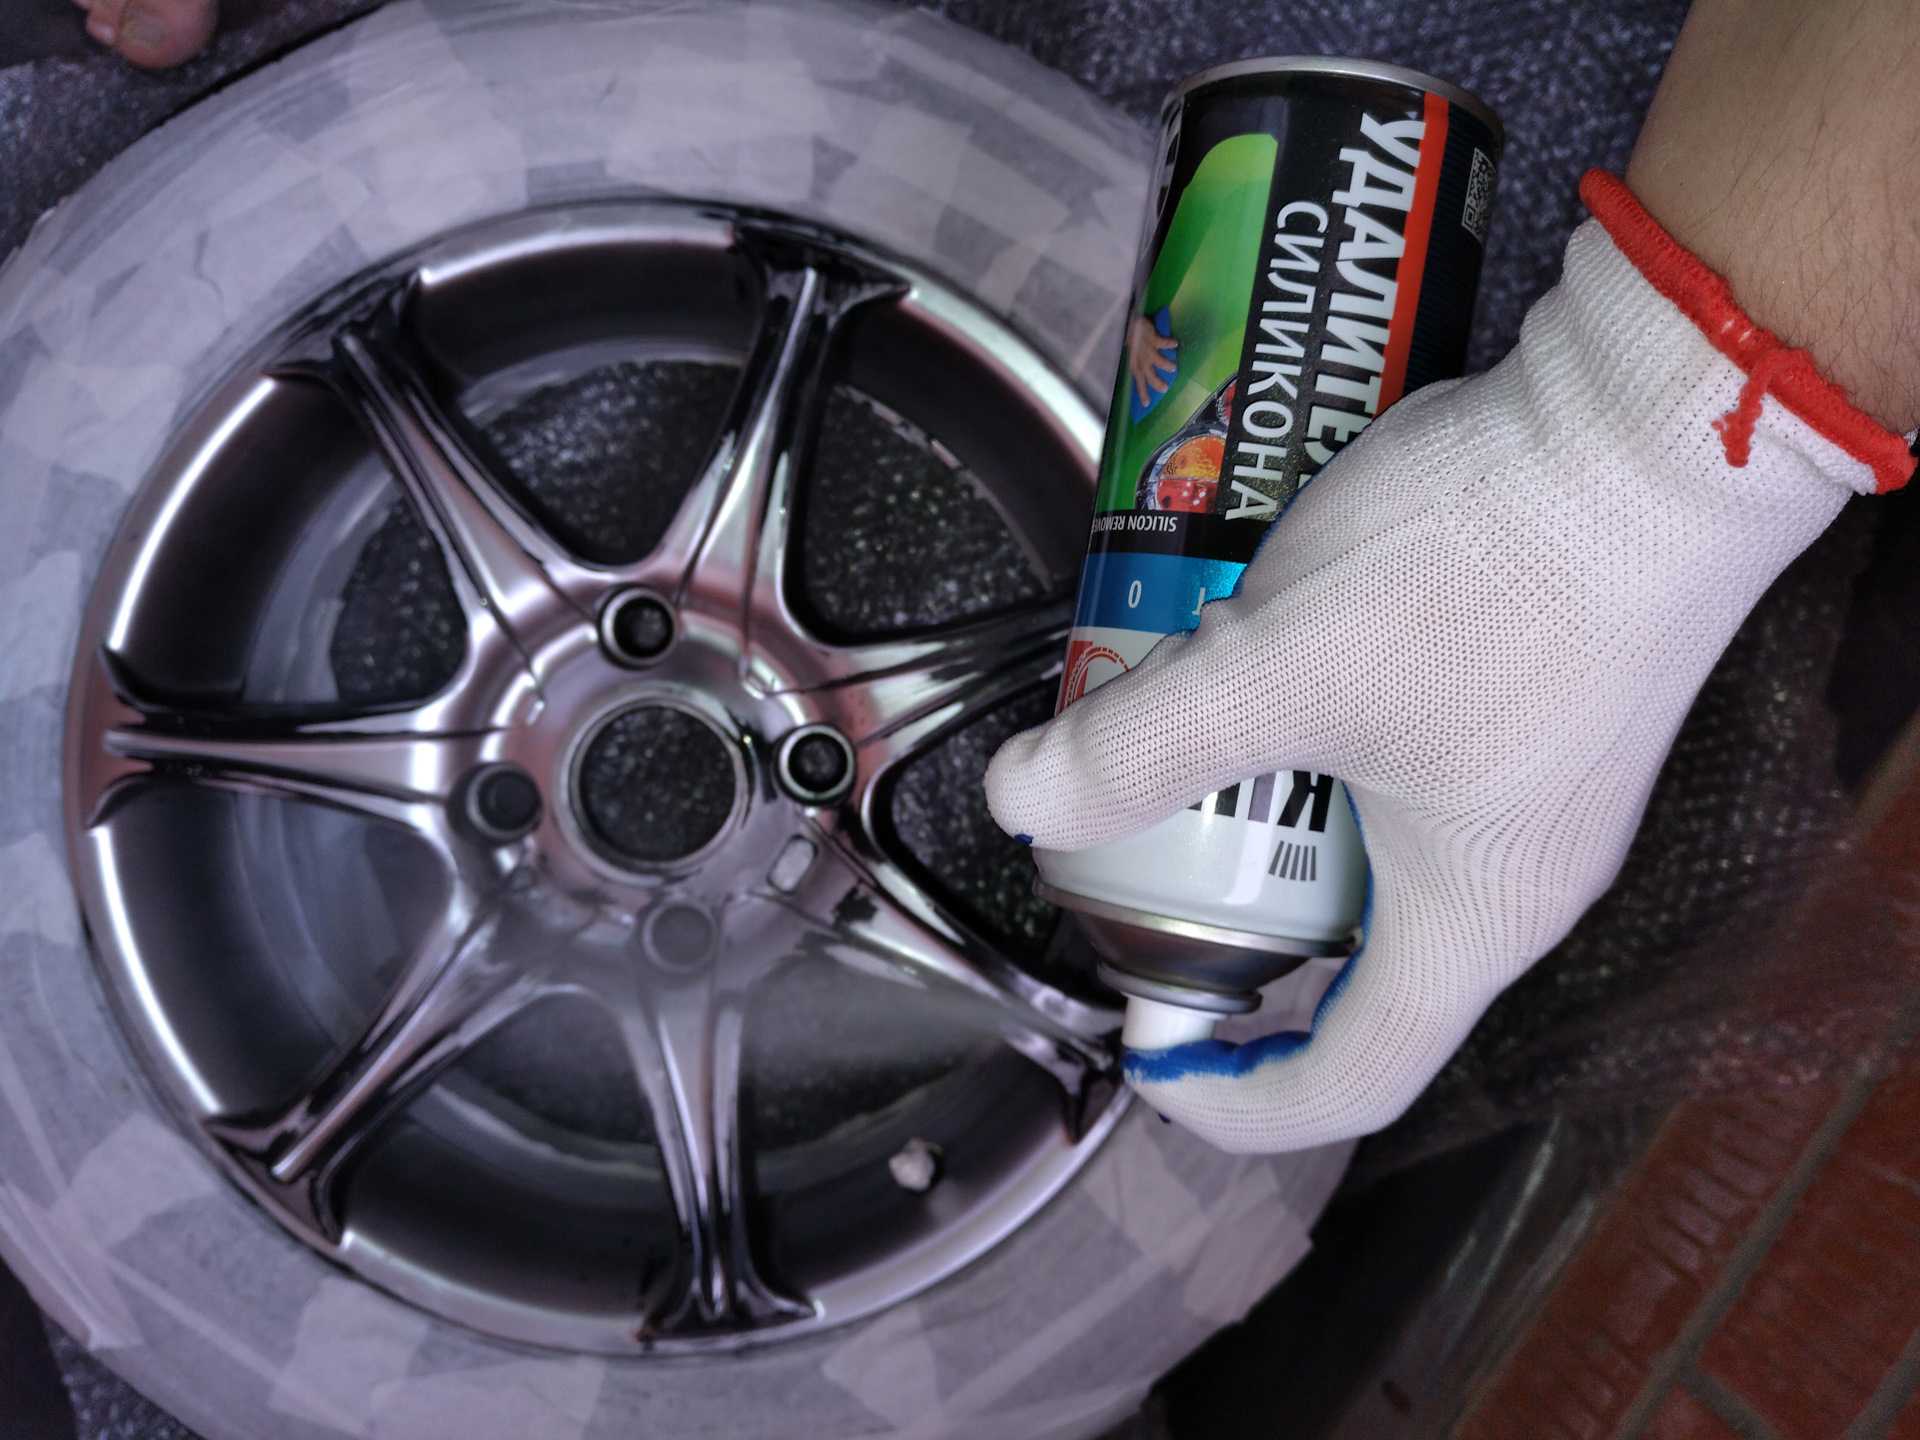 Окраска кованых и других колесных дисков авто может проводиться лаком, краской, пластидипом Покрасить их можно по технологии аквапринт или используя пленку